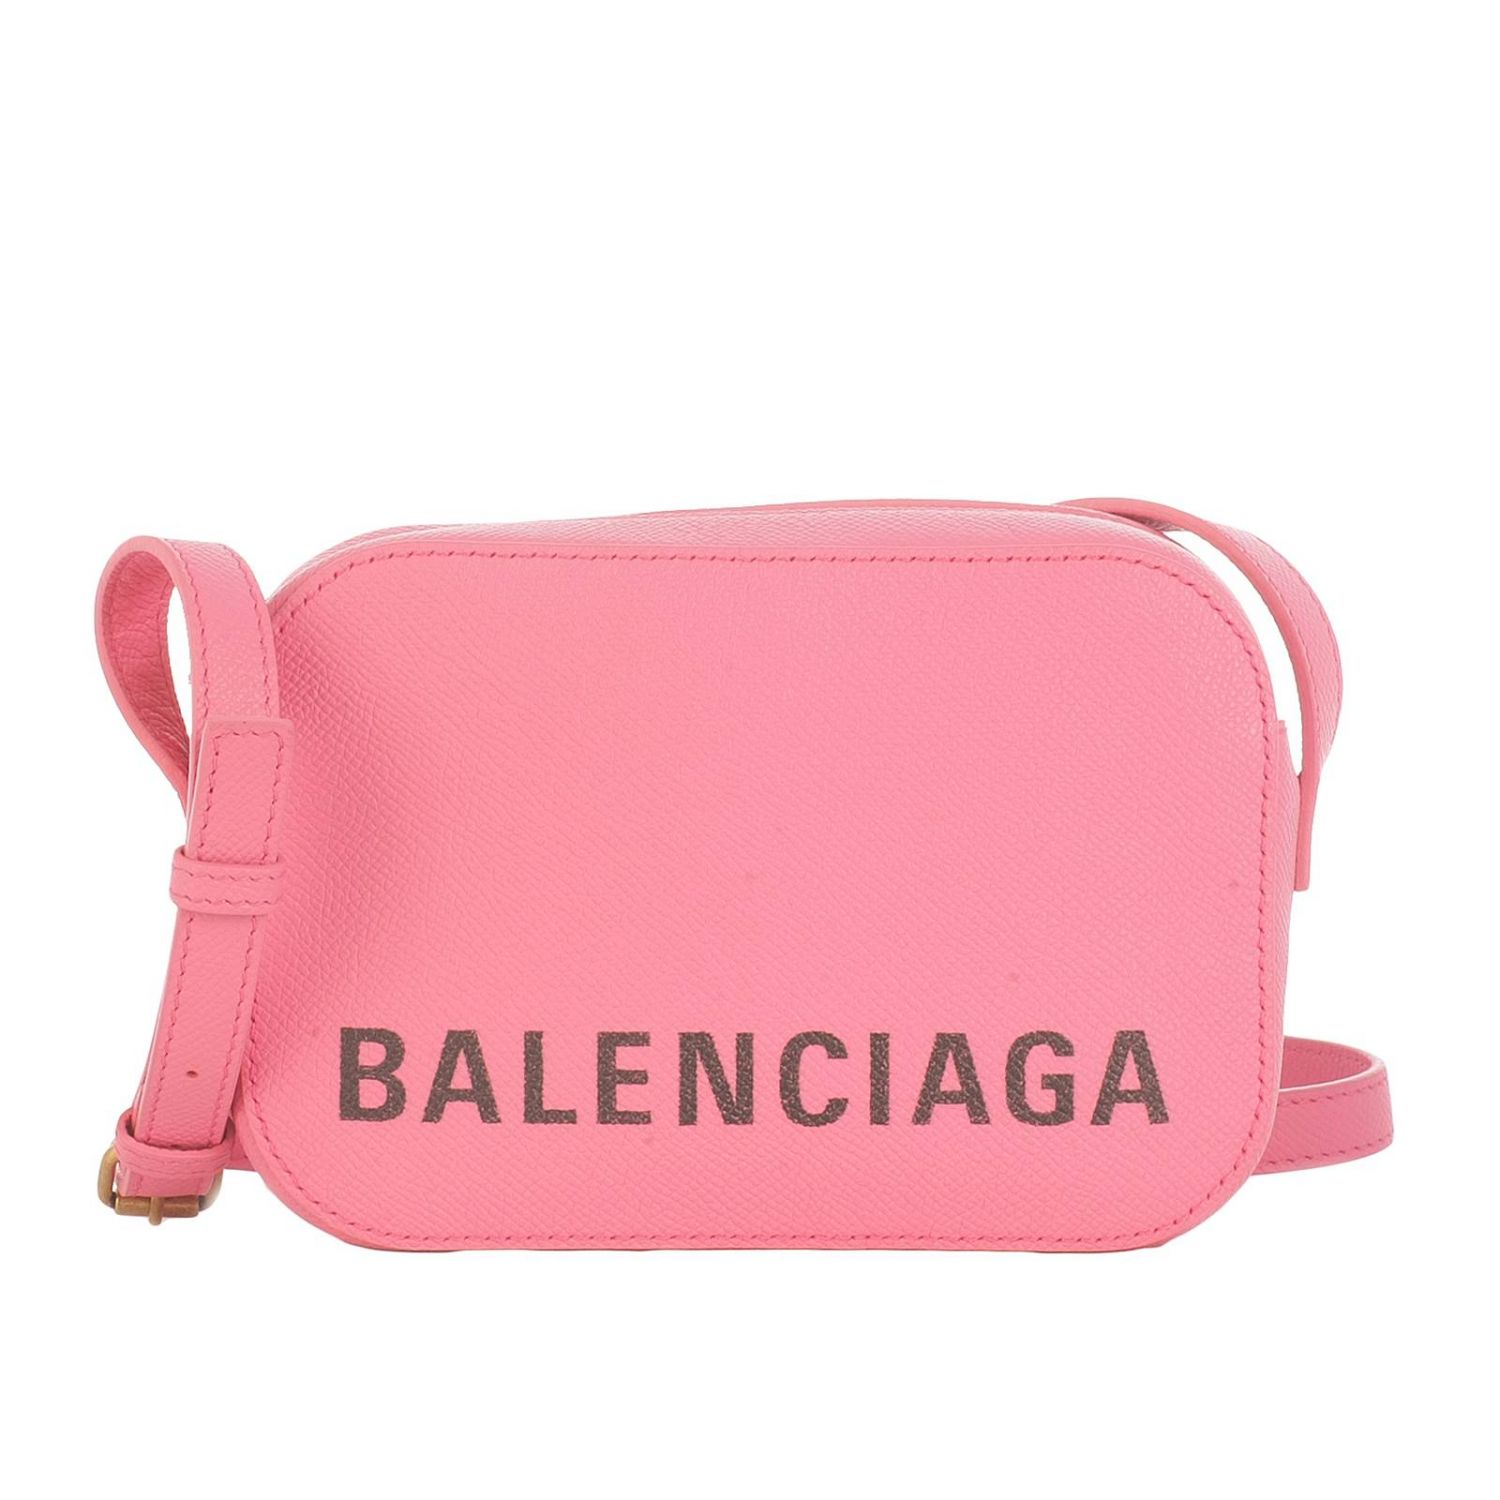 Balenciaga Outlet: mini bag for woman - Pink | Balenciaga mini bag ...